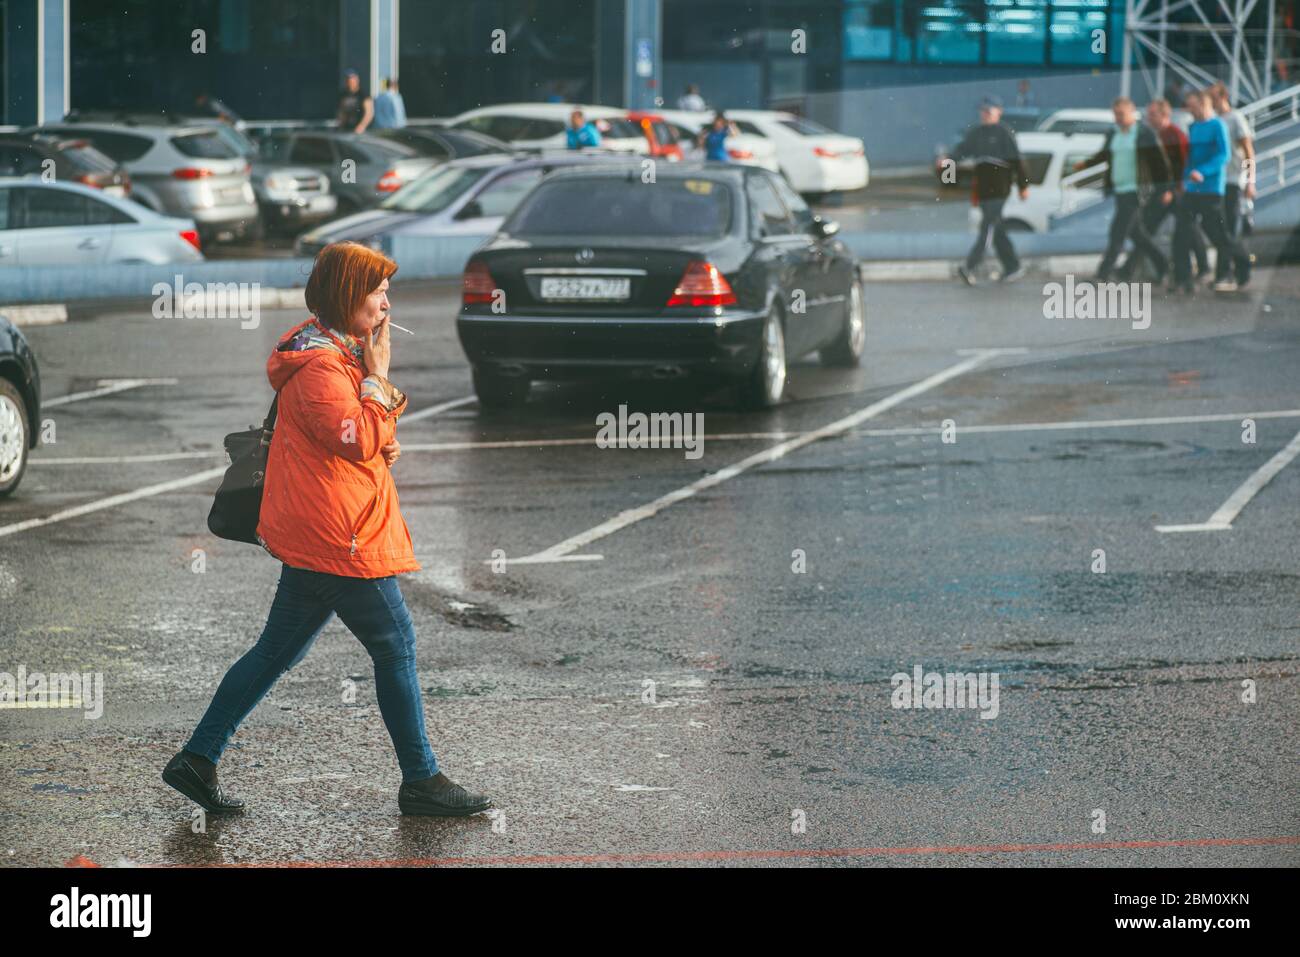 Moskau, Russland - 2. MAI 2018: Eine Frau in einer roten Jacke geht eine nasse Straße entlang und raucht an einem öffentlichen Ort eine Zigarette Stockfoto